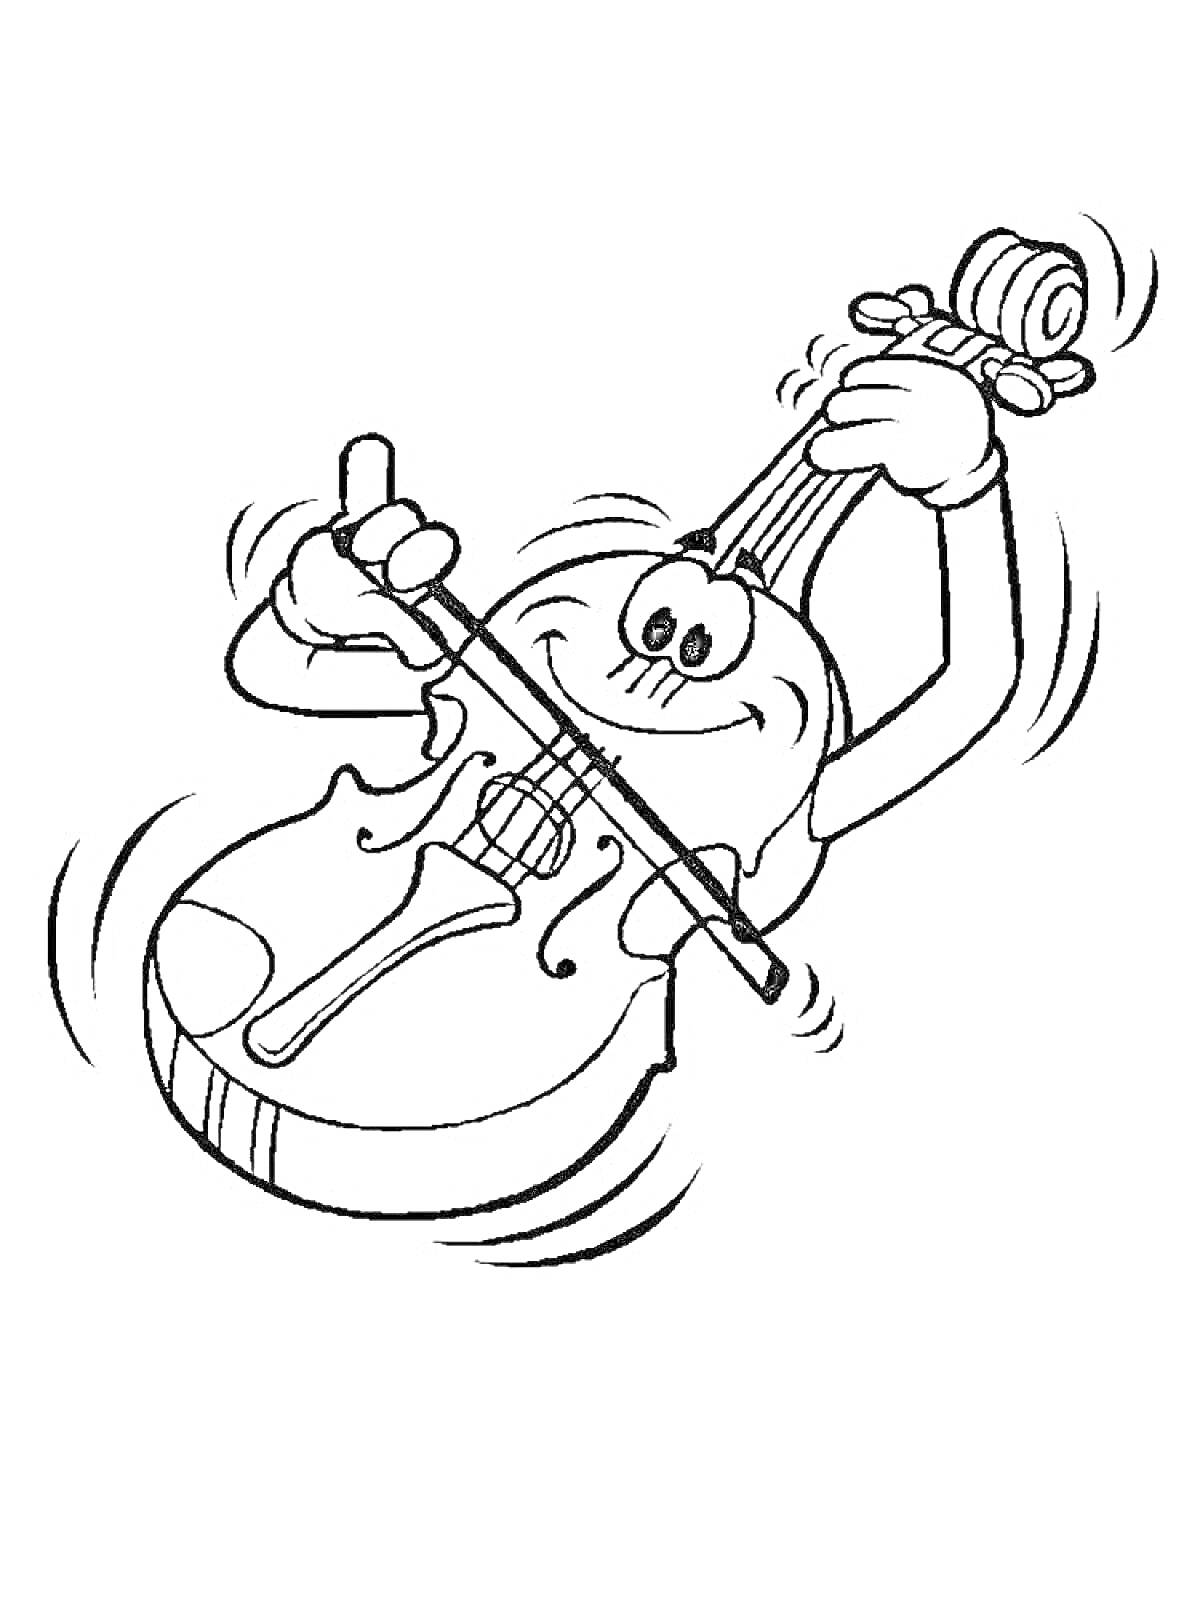 Раскраска улыбающаяся скрипка с руками и смычком, играющая музыку